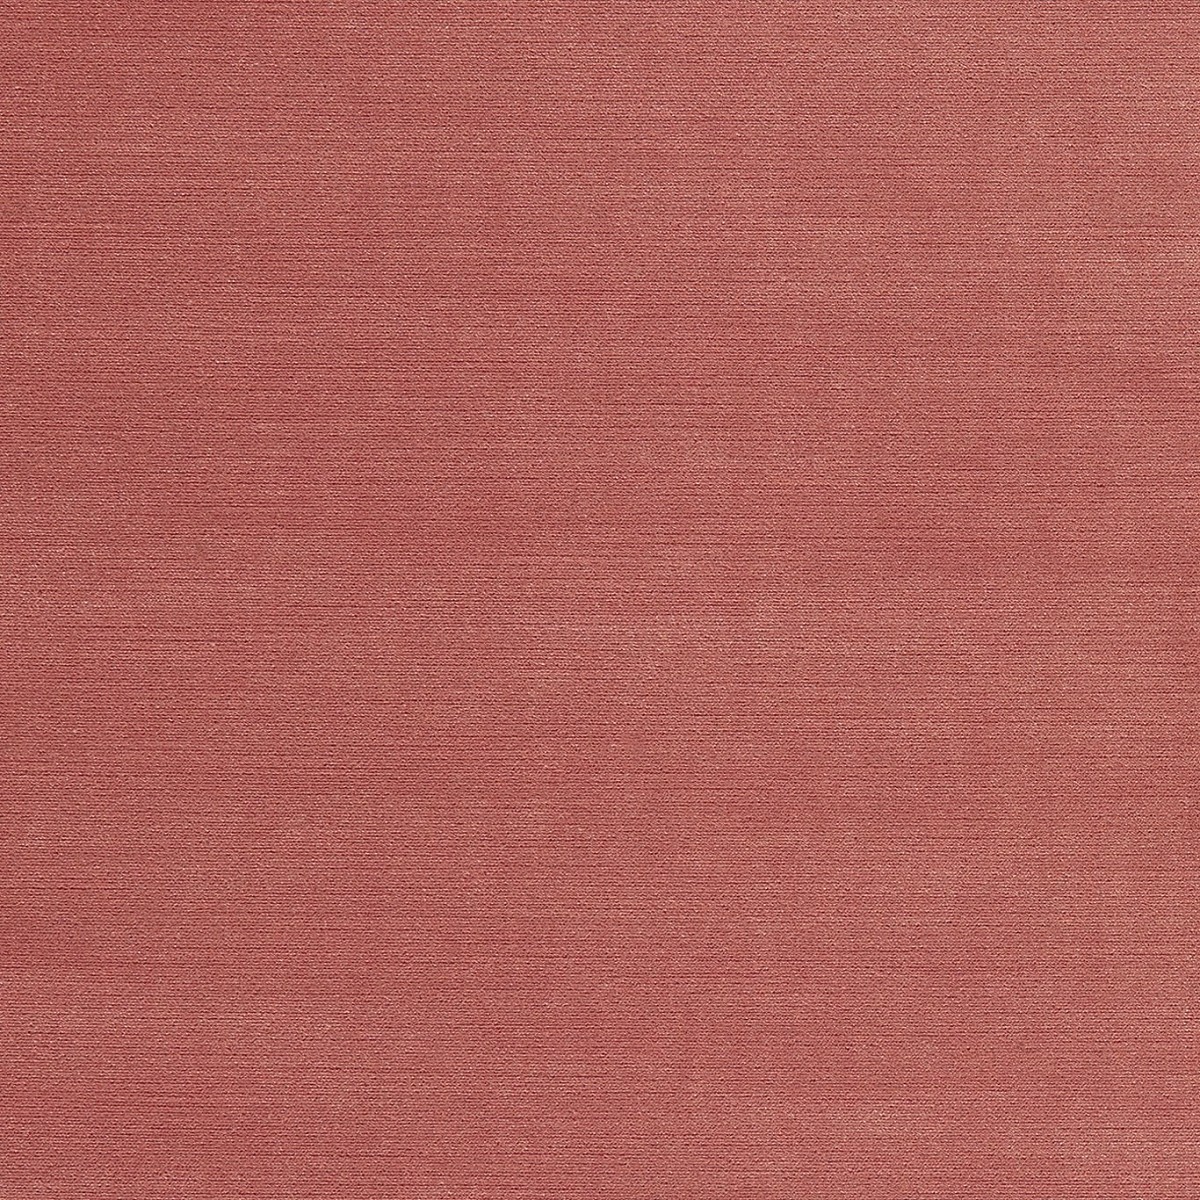 Riva Rose Fabric by Clarke & Clarke